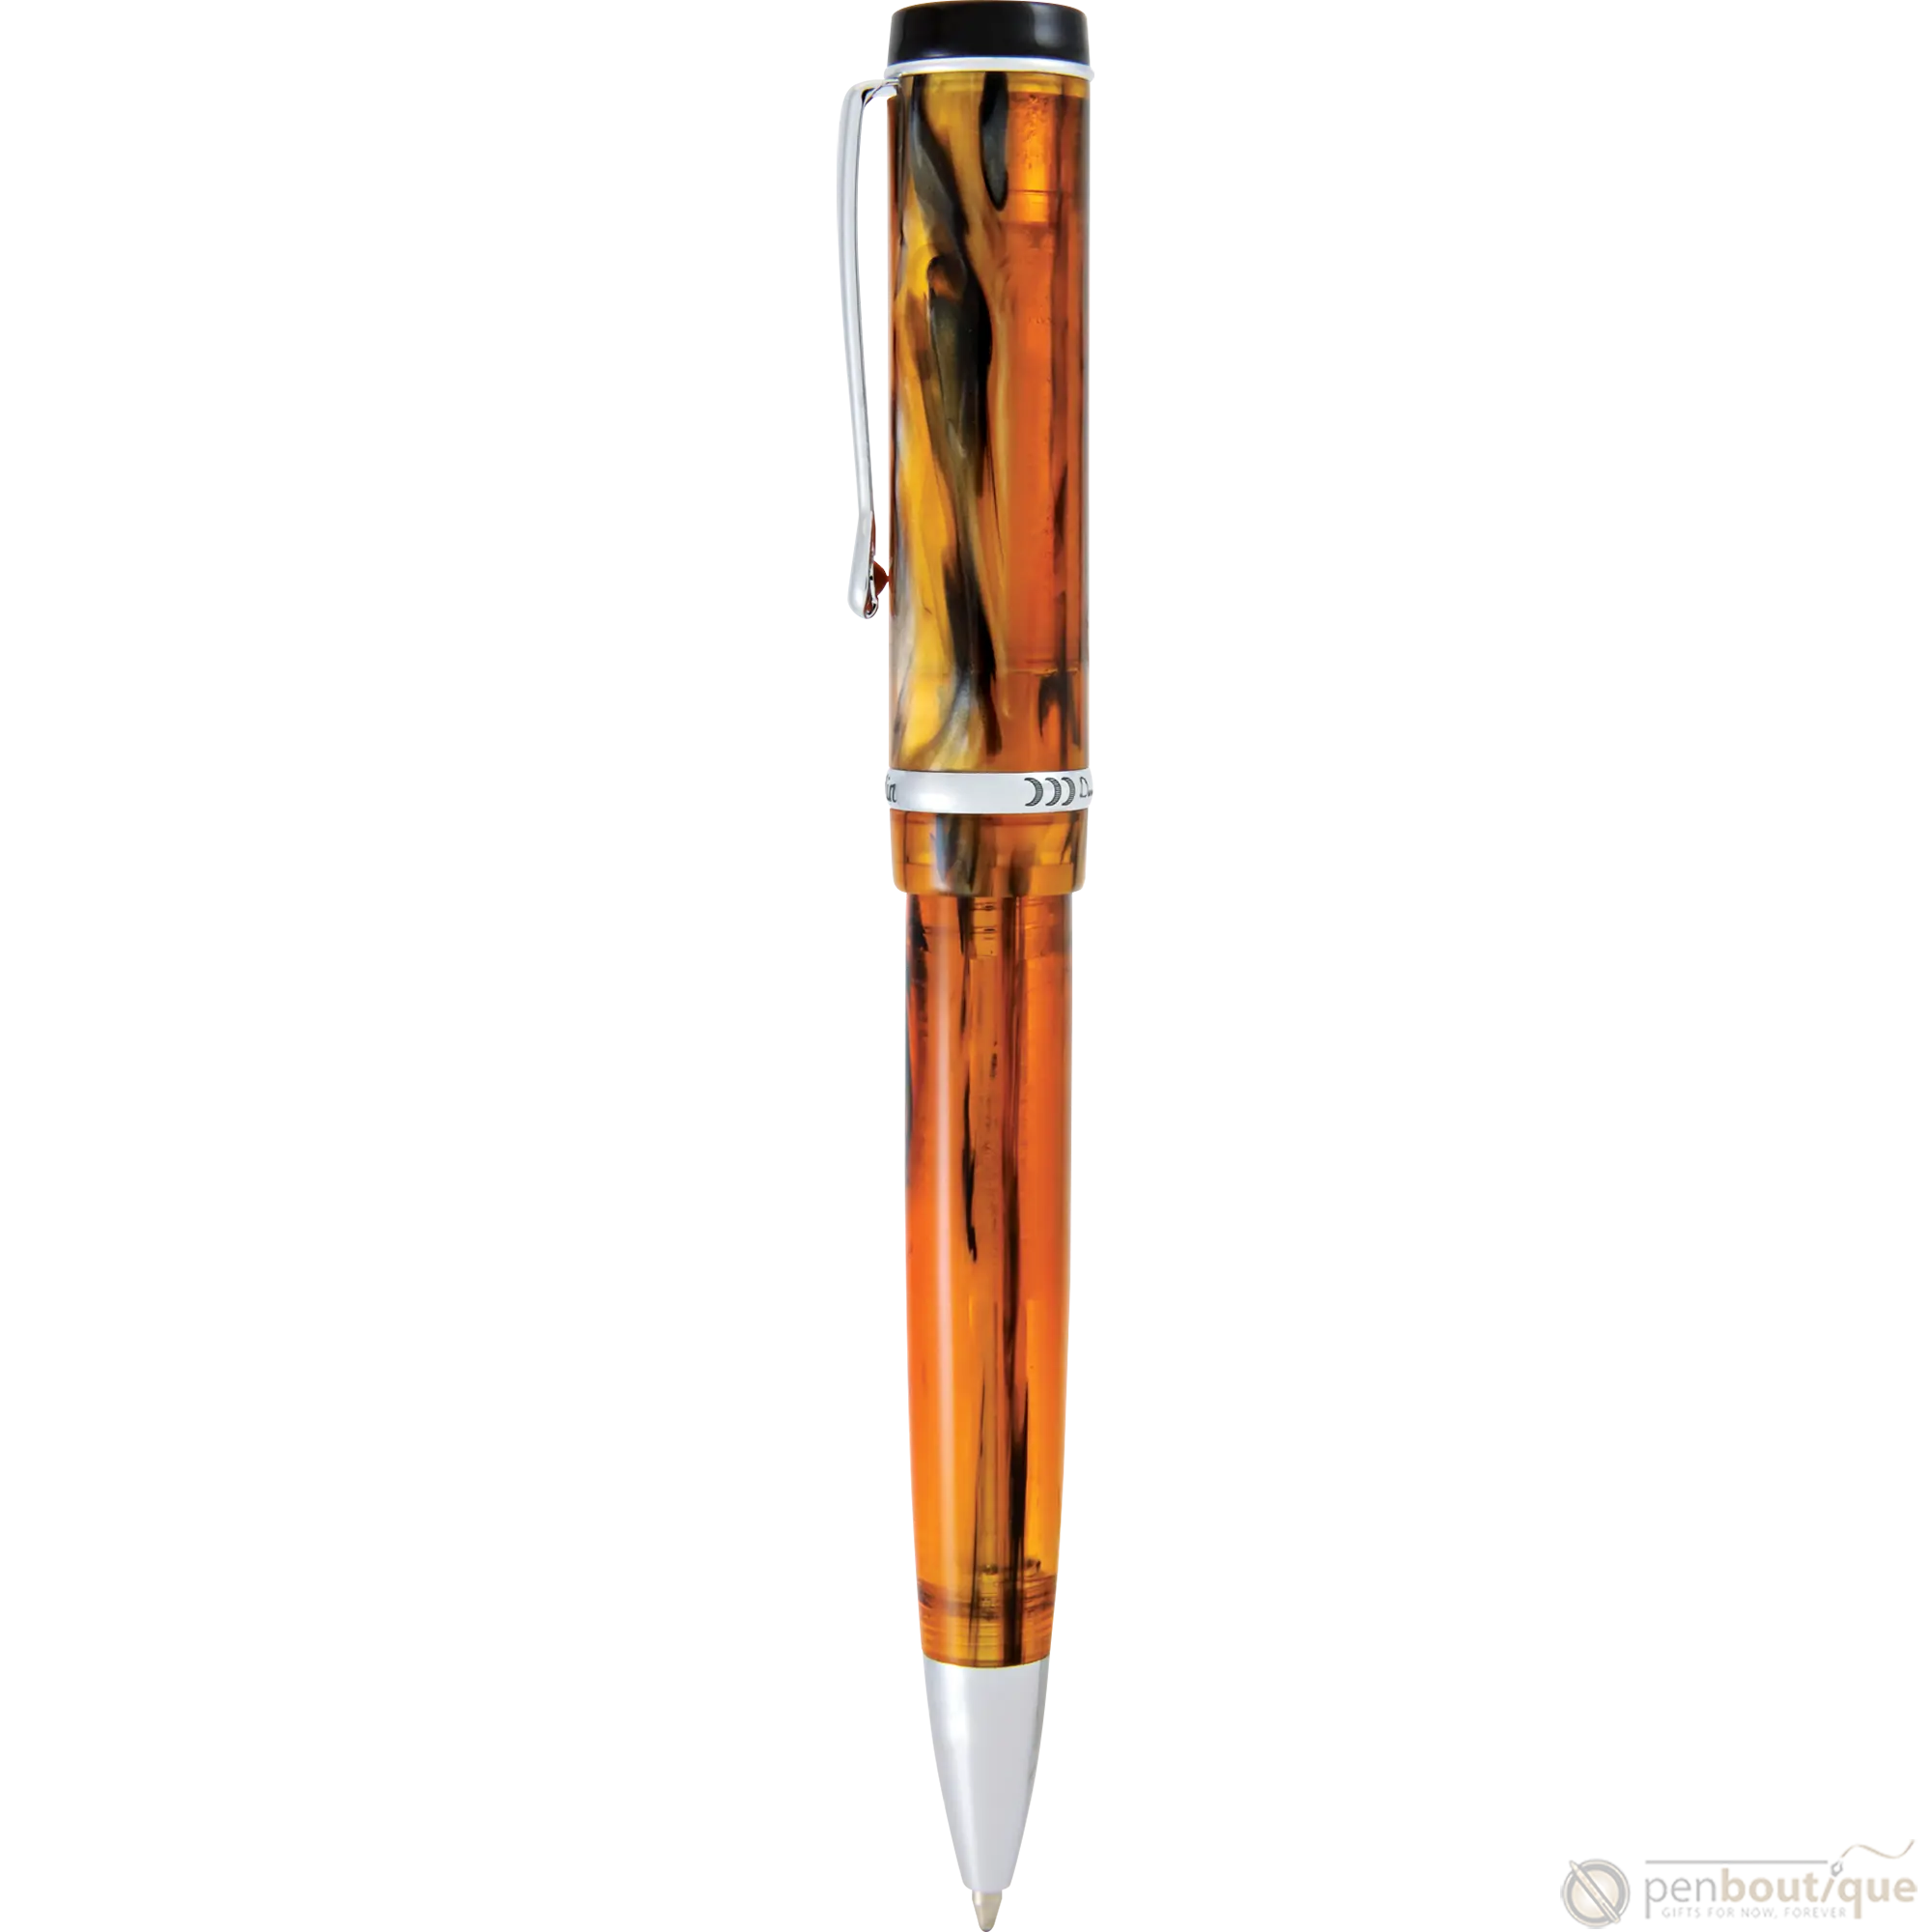 Conklin Duragraph Ballpoint Pen - Amber-Pen Boutique Ltd